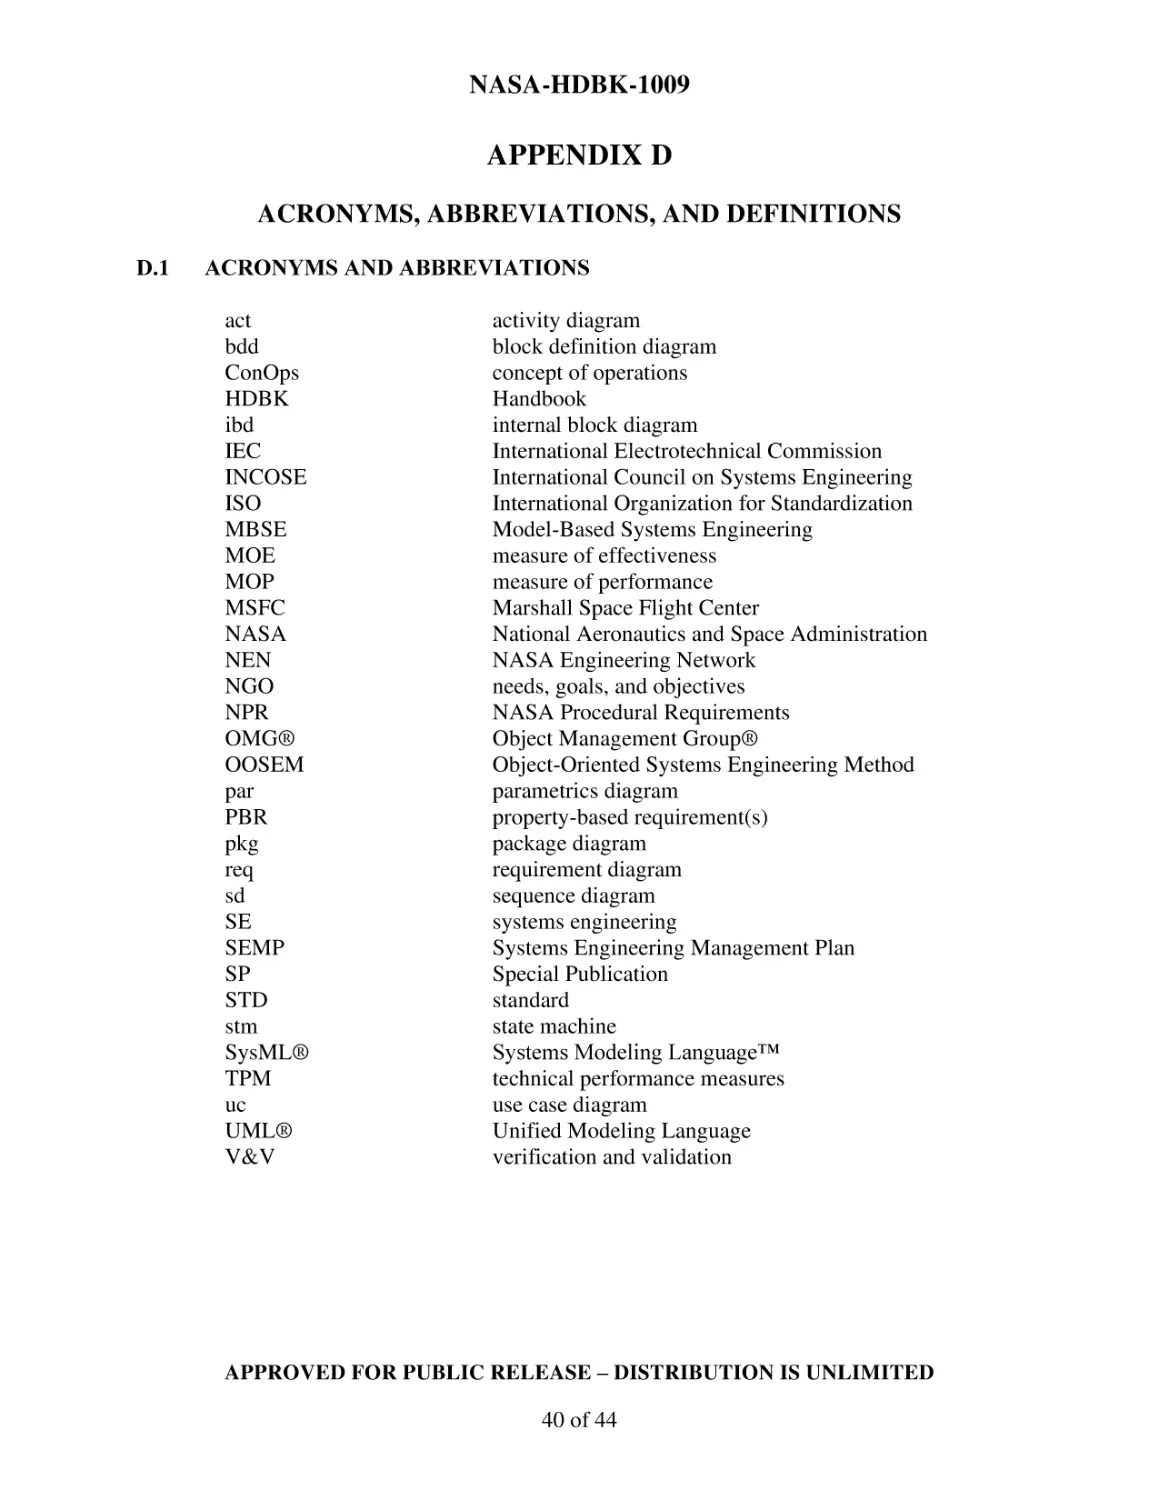 APPENDIX D
D.1 Acronyms AND Abbreviations